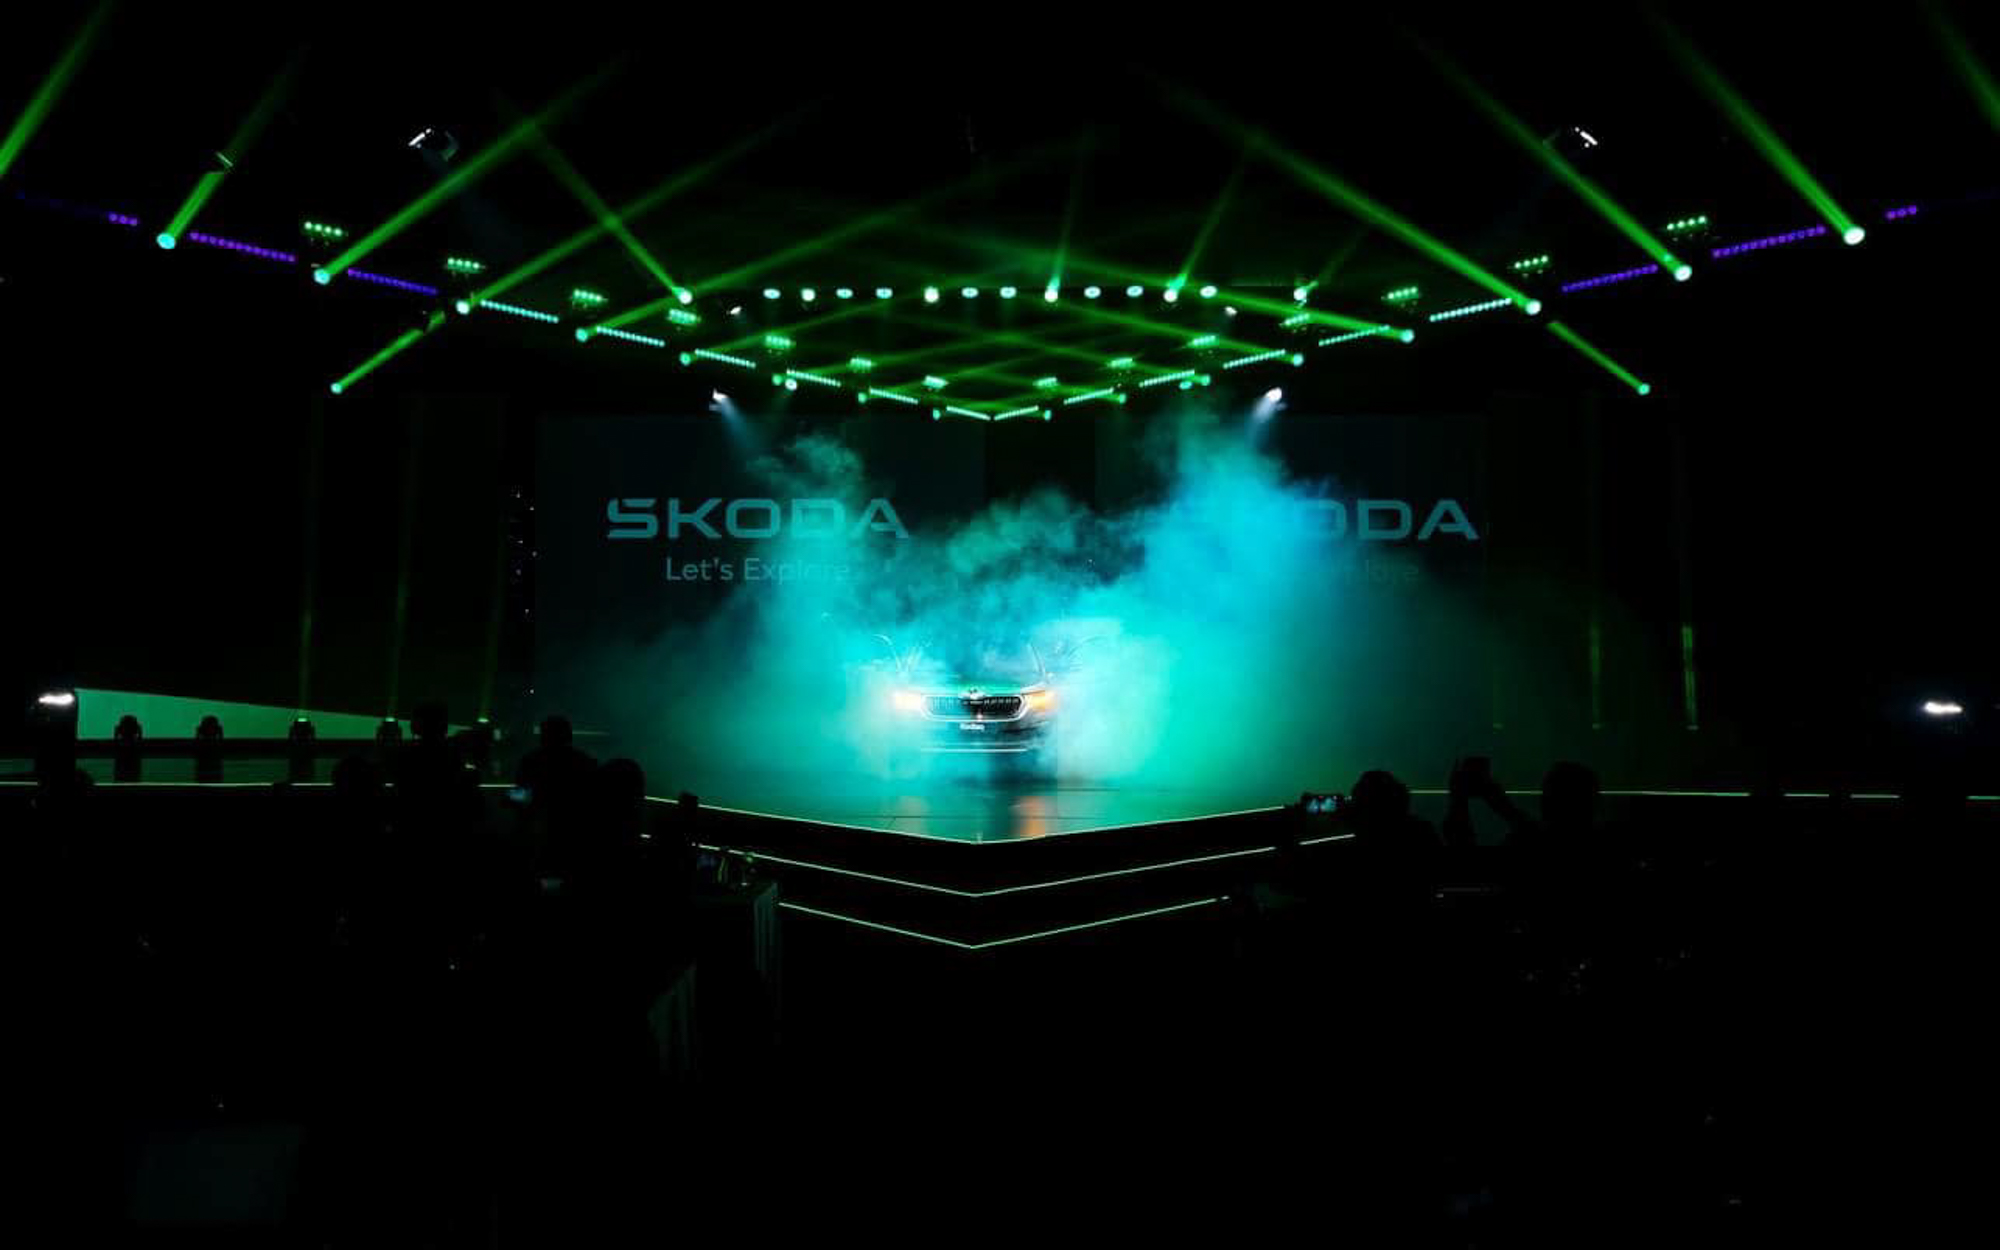 Chụp hình sự kiện: Lễ ra mắt xe thương hiệu SKODA